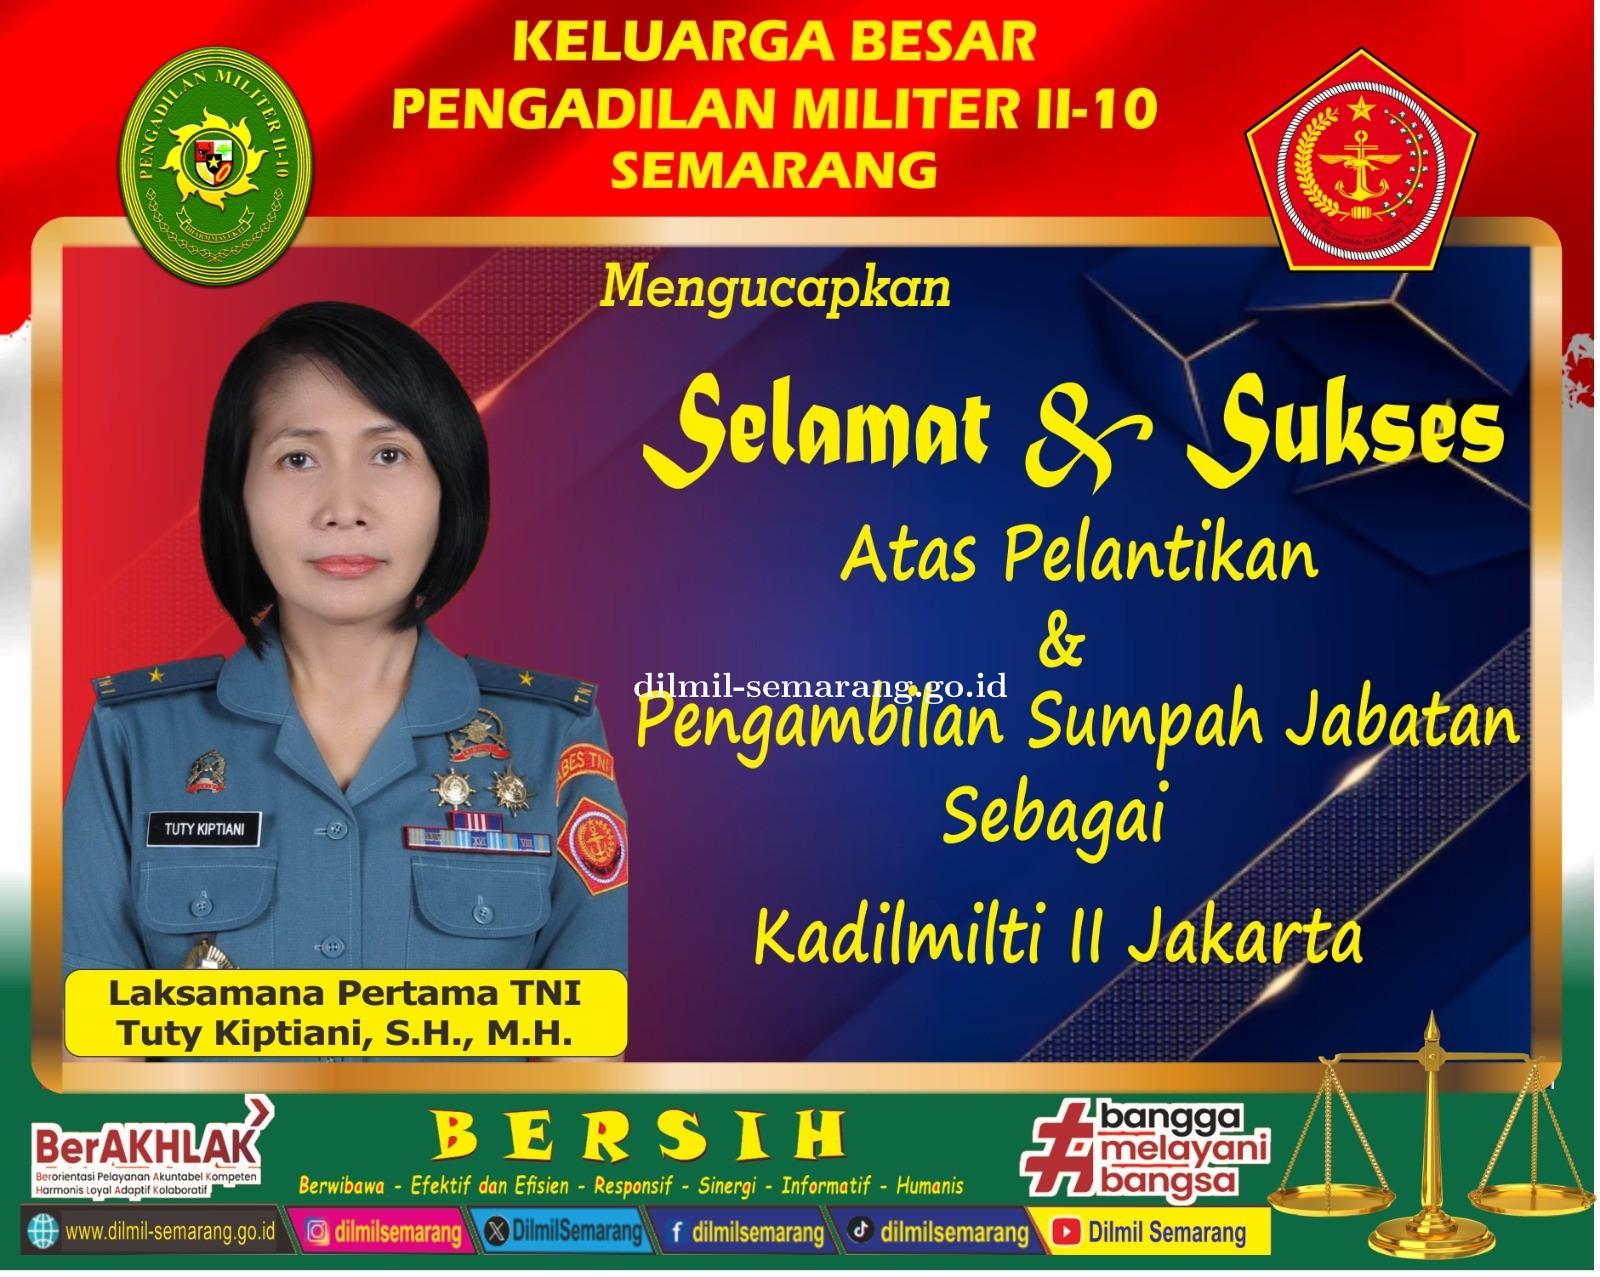 Selamat dan Sukses Atas Pengambilan Sumpah Jabatan dan Pelantikan  Laksamana Pertama TNI Tuty Kiptiani, S.H., M.H.